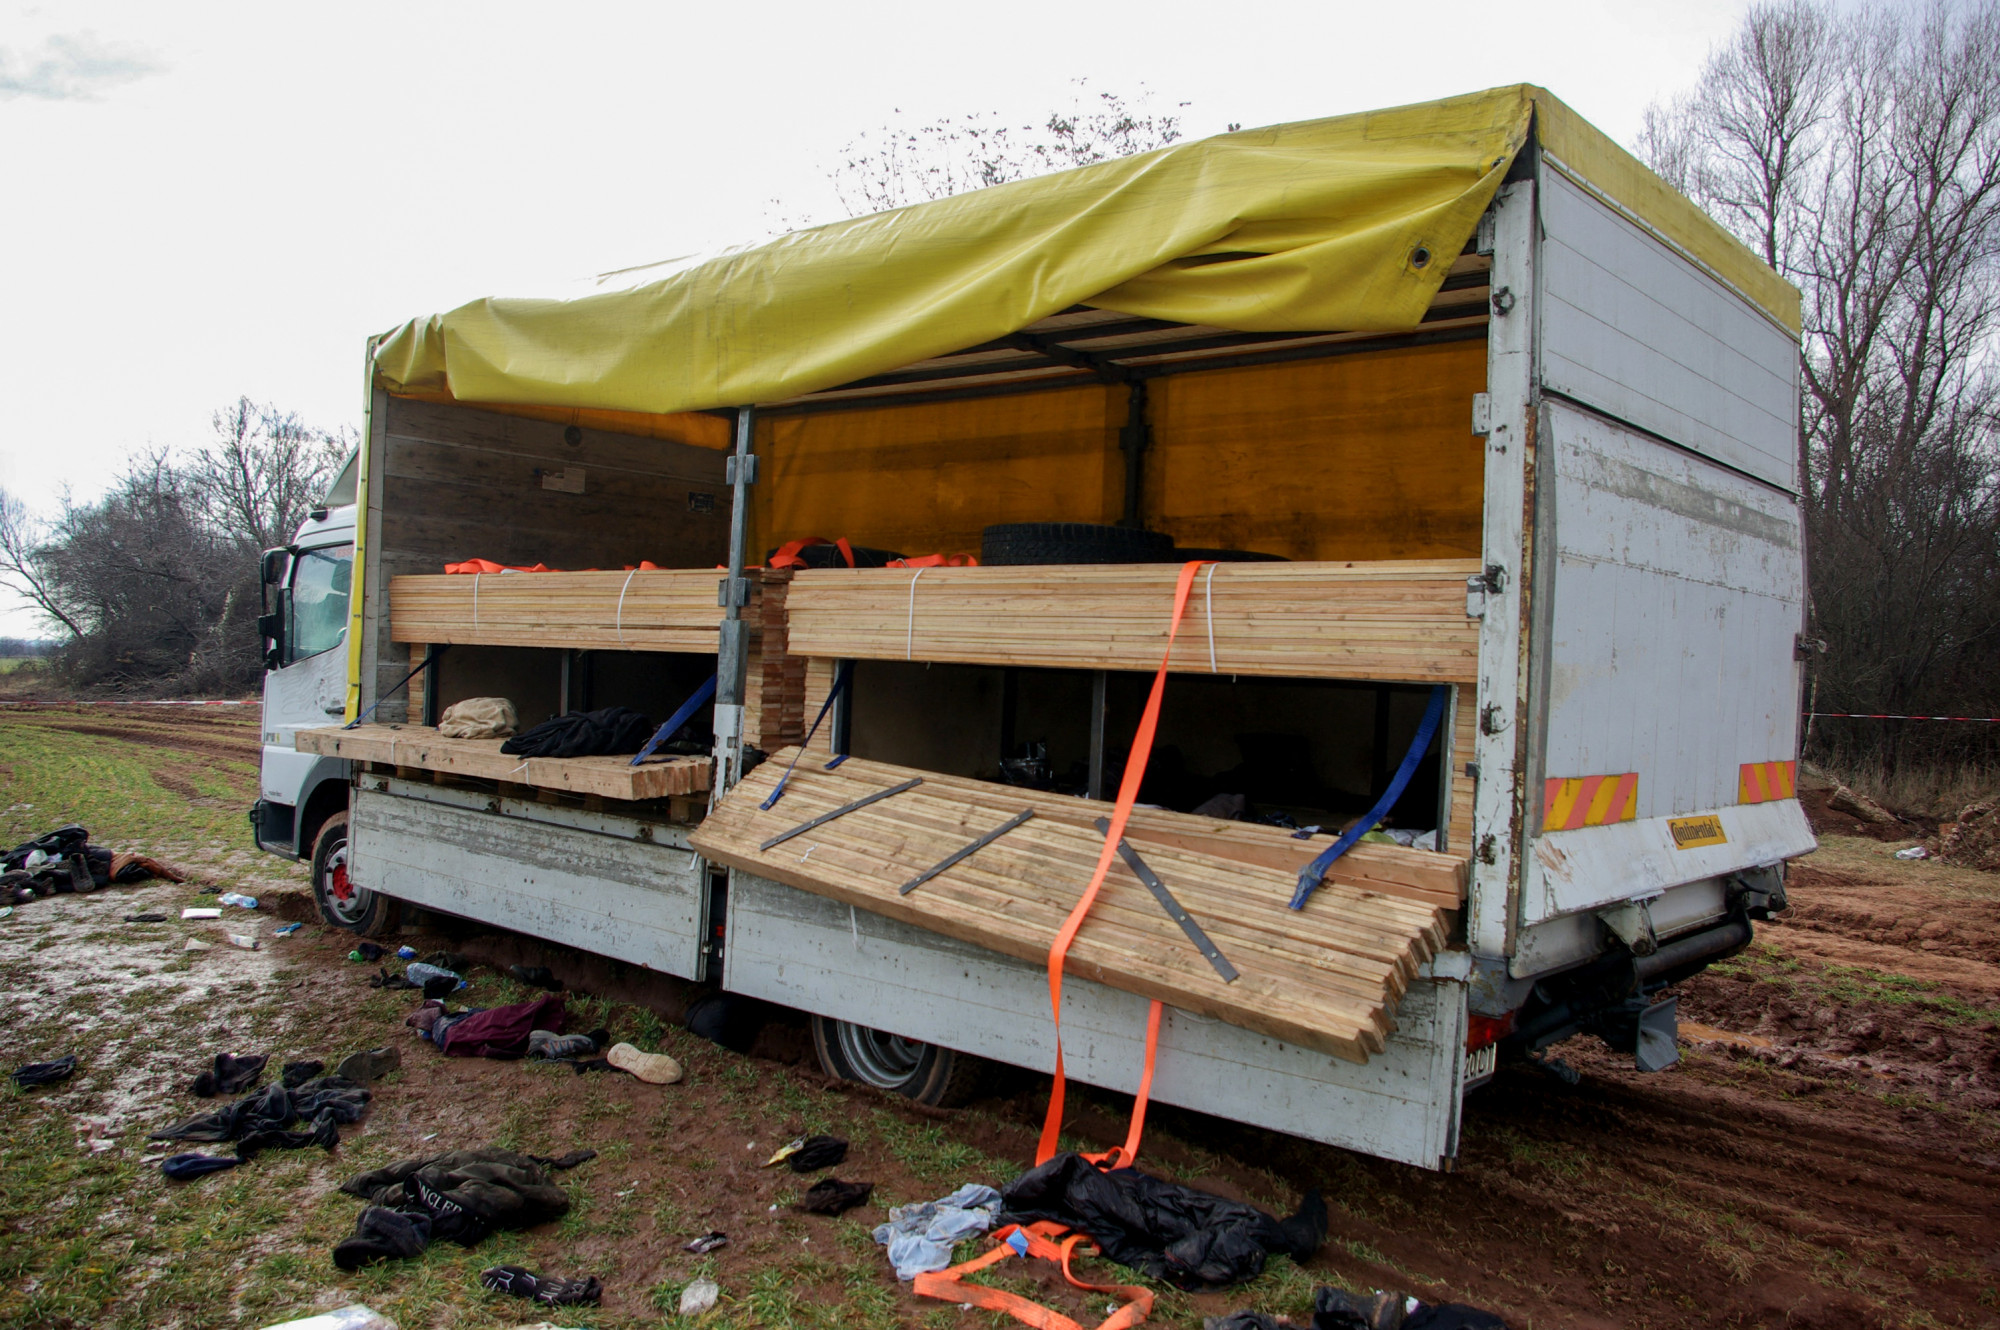 Hat embert vádolnak embercsempészettel Bulgáriában, miután egy teherautóban 18 bevándorlót találtak holtan